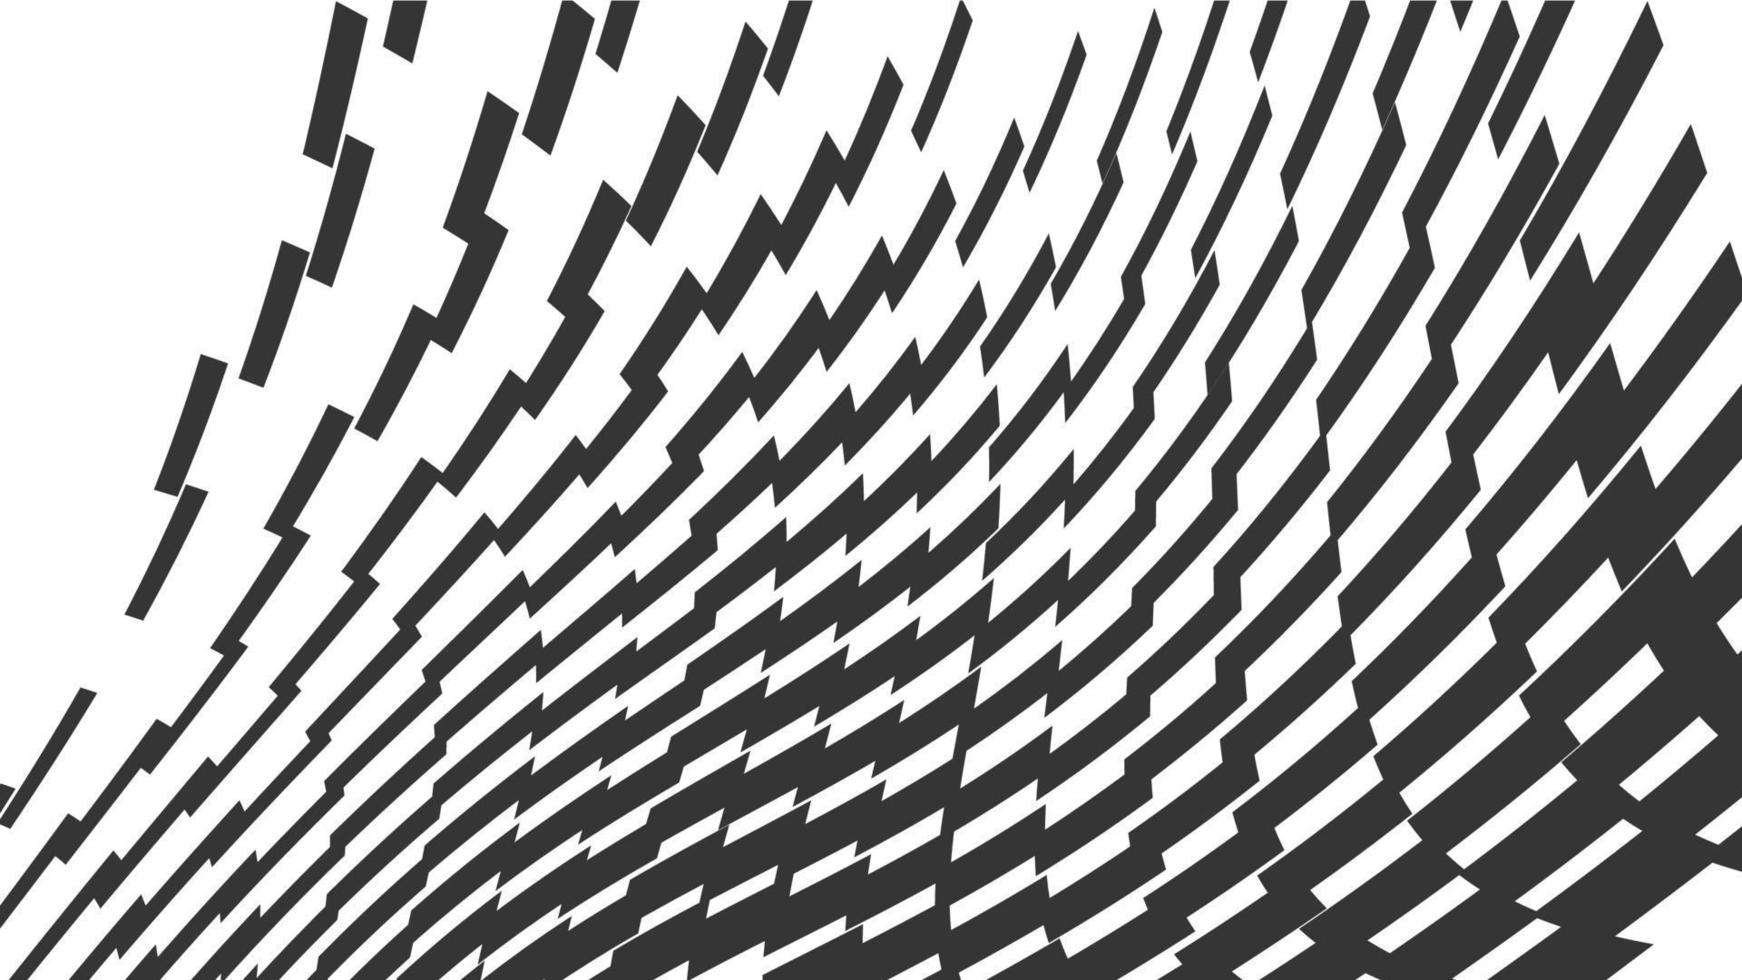 patrón geométrico abstracto vectorial sin costuras con líneas de desvanecimiento de onda, pistas, rayas de medio tono. ilustración de estilo deportivo extremo, arte urbano. textura gráfica monocromática de moda. patrón deportivo con estilo. vector